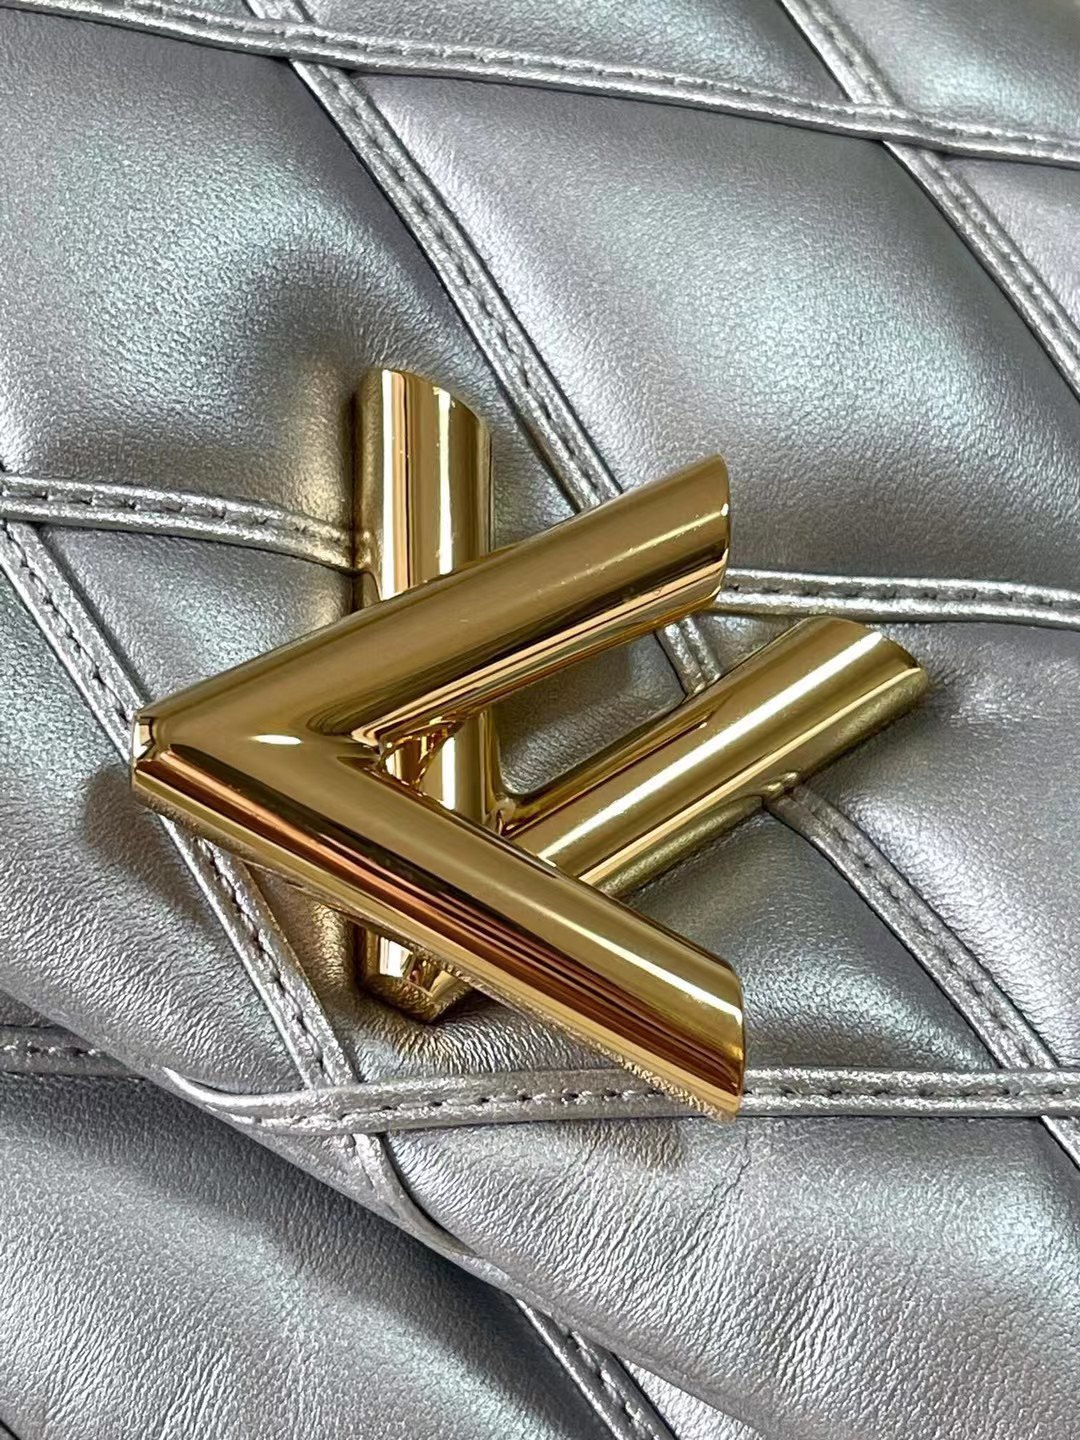 M25107银色本款G0-14中号手袋取材华美羊皮革以指缝图案致敬品牌传统行李箱设计LVTwist扭锁彰